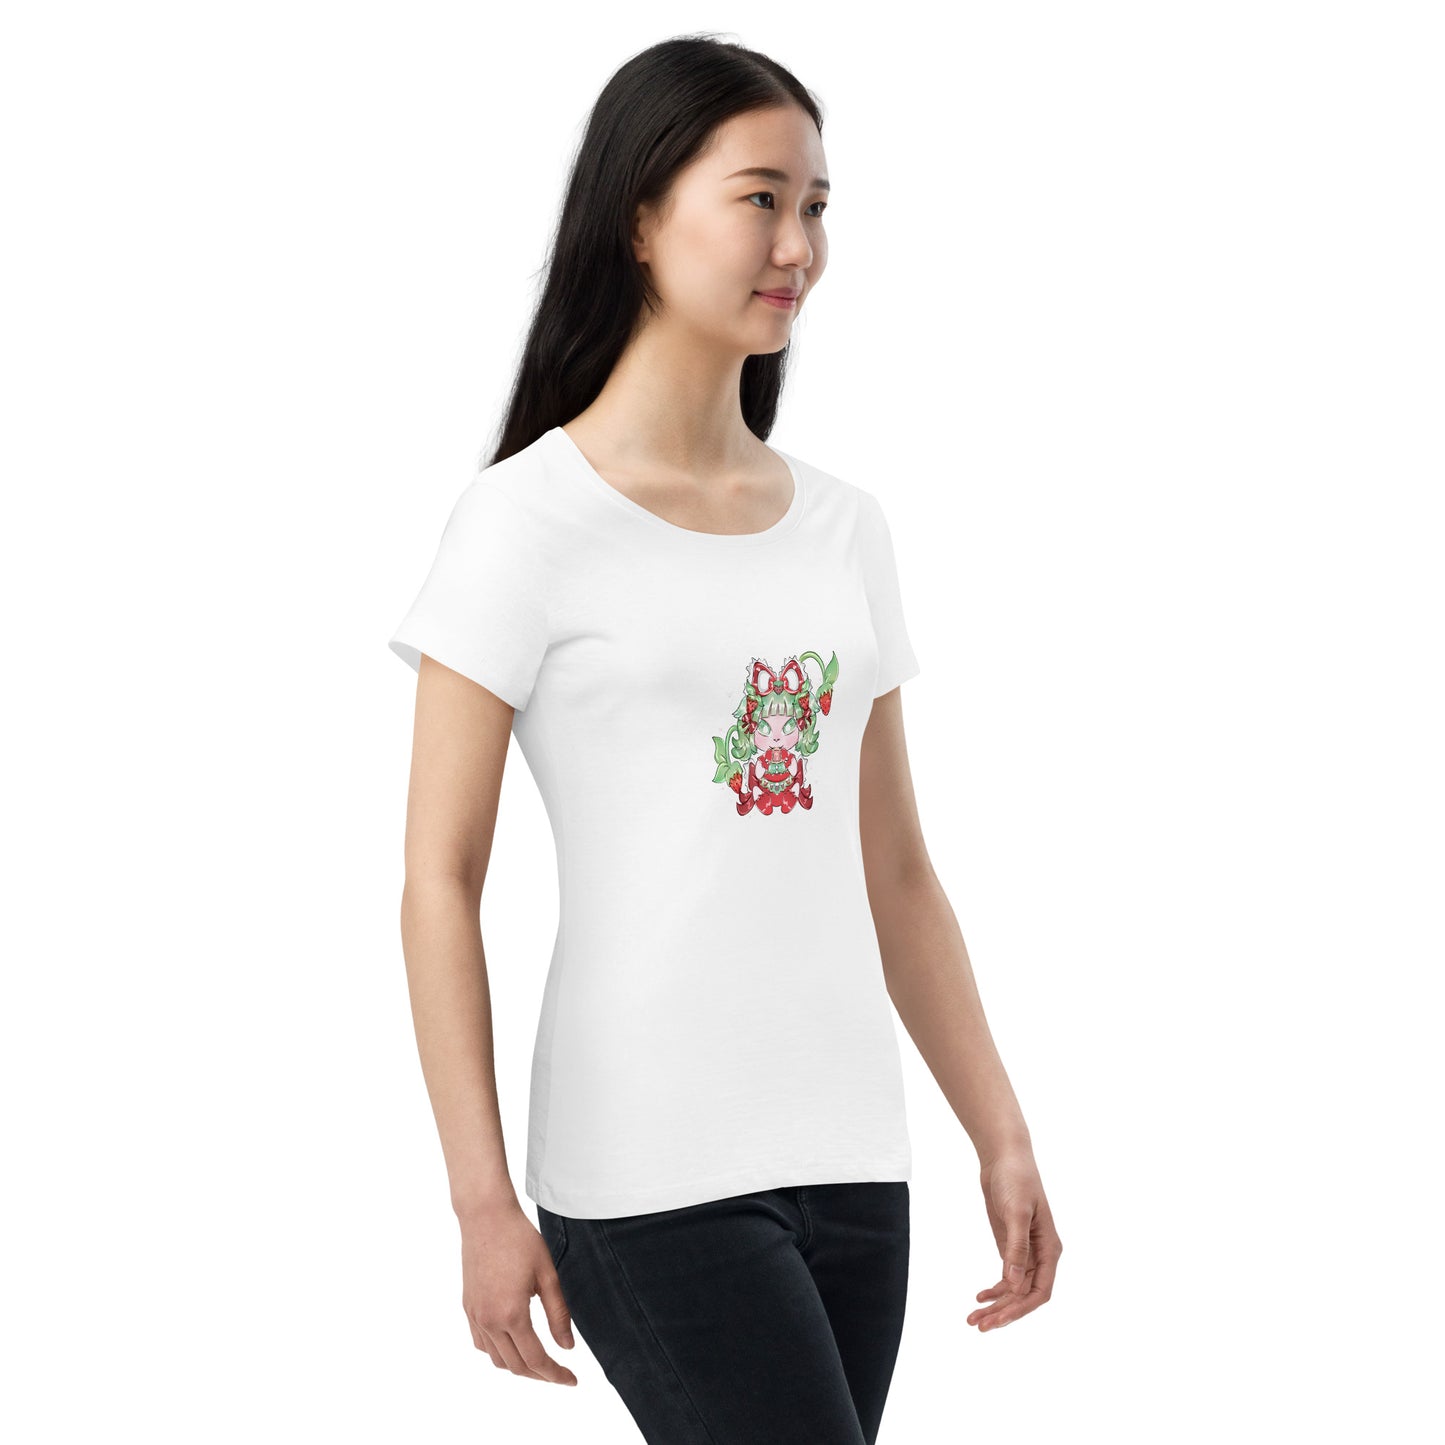 Women’s basic organic t-shirt feat Yamibo NFT by Vio